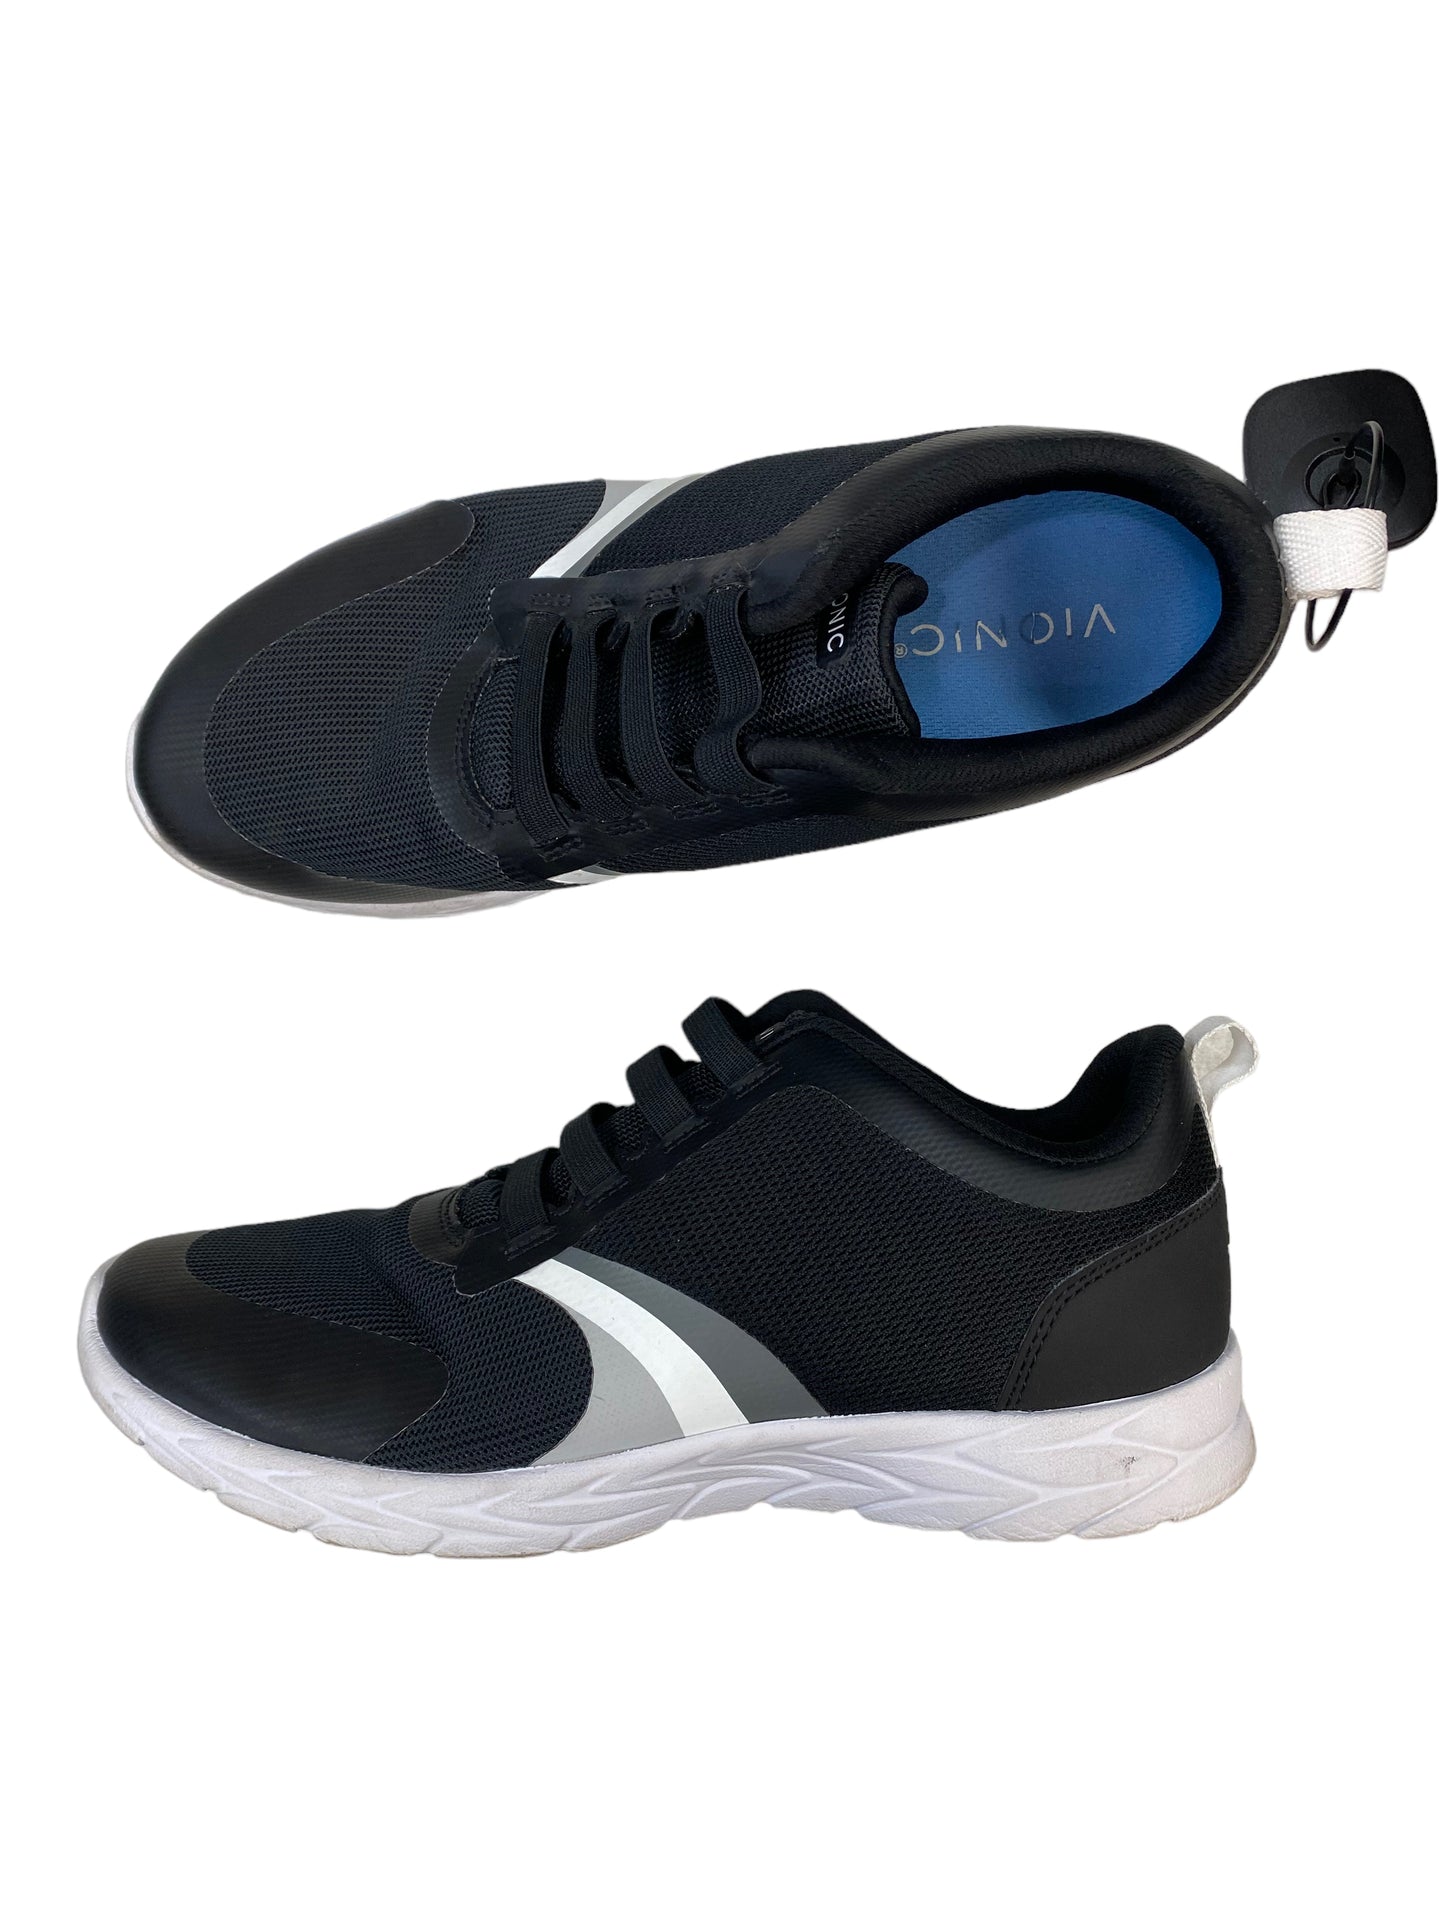 Black Shoes Athletic Vionic, Size 8